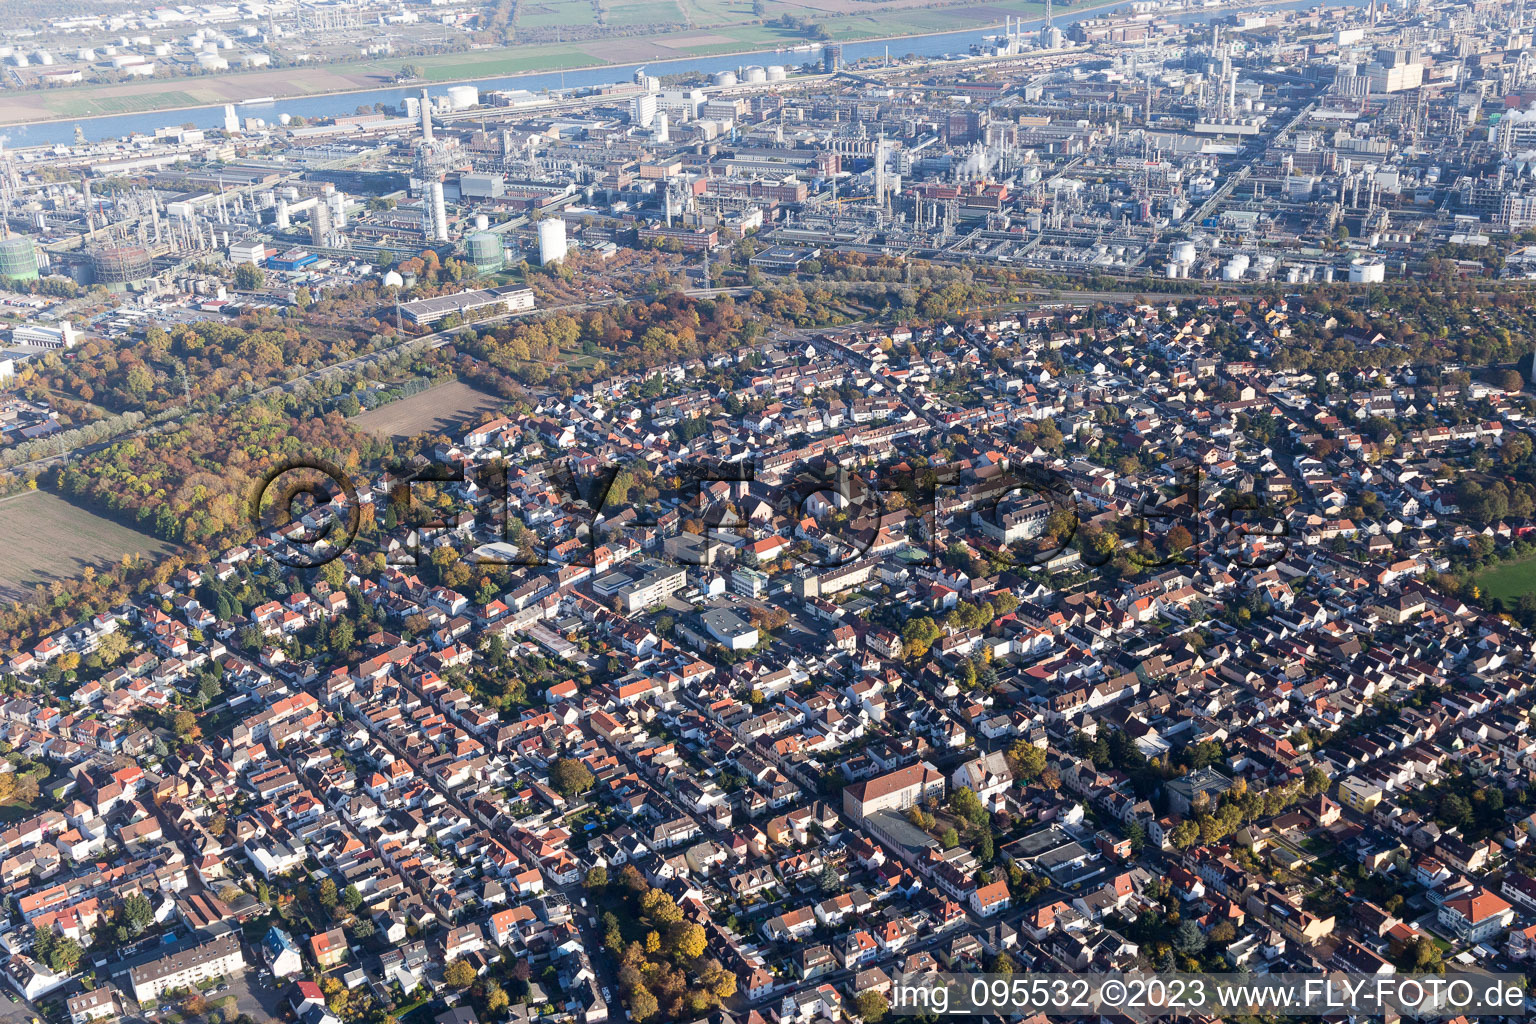 Ortsteil Oppau in Ludwigshafen am Rhein im Bundesland Rheinland-Pfalz, Deutschland von der Drohne aus gesehen